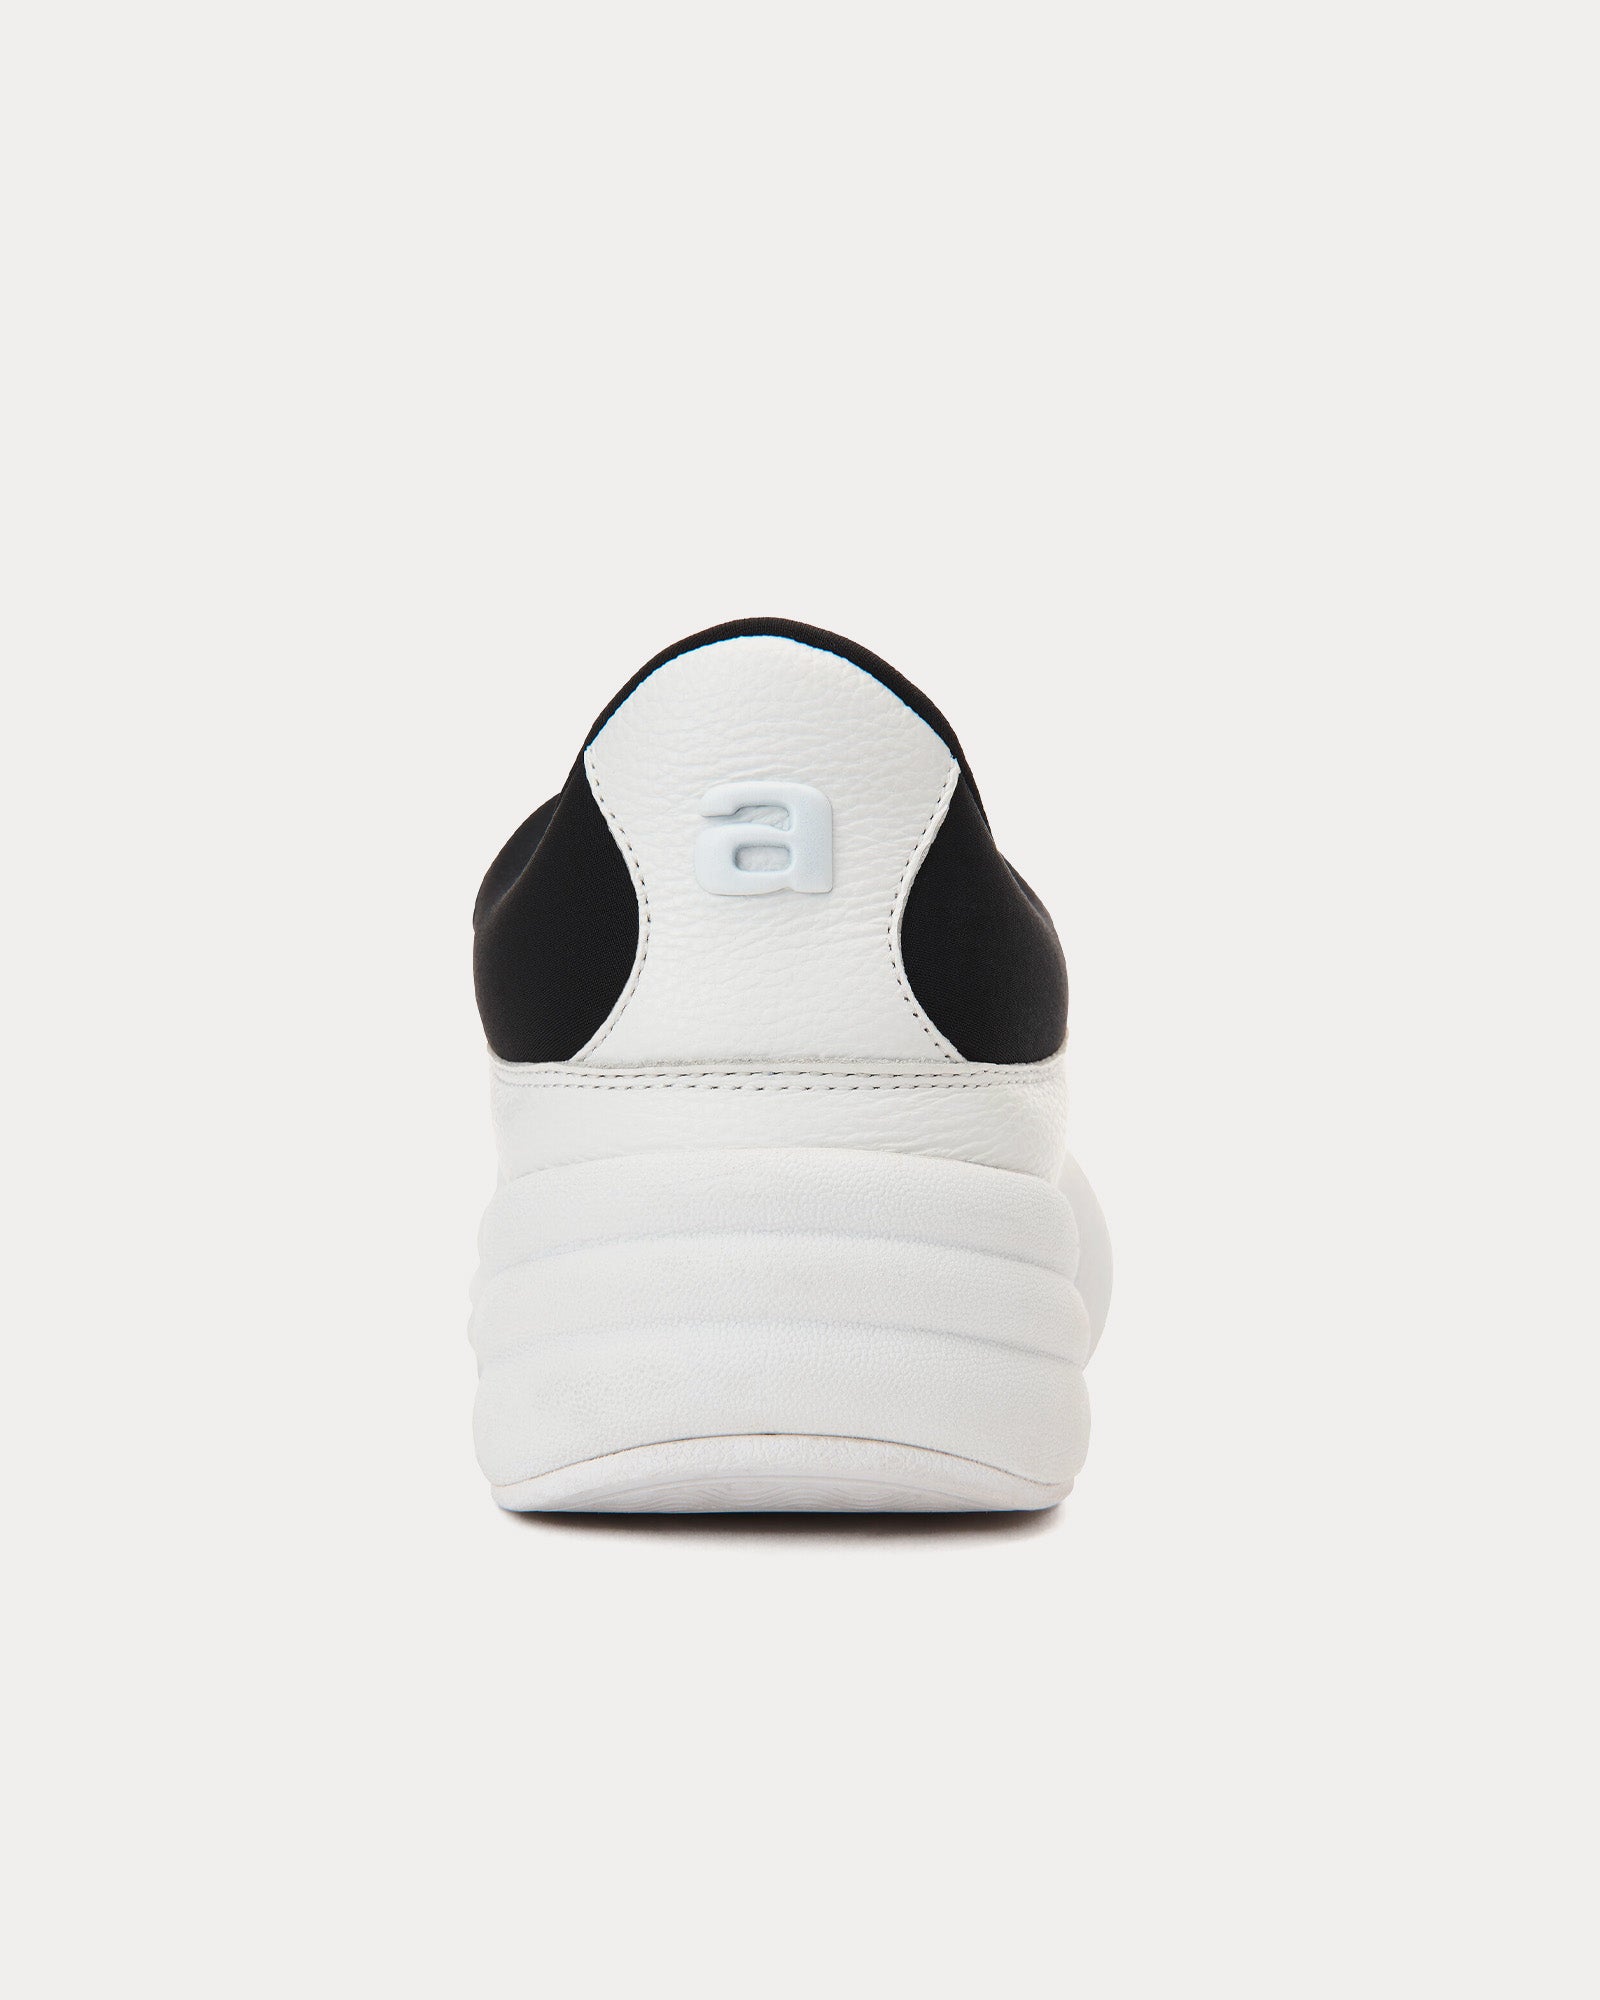 Alexander Wang - AW Hoop Pebble Leather White / Black Slip On Sneakers